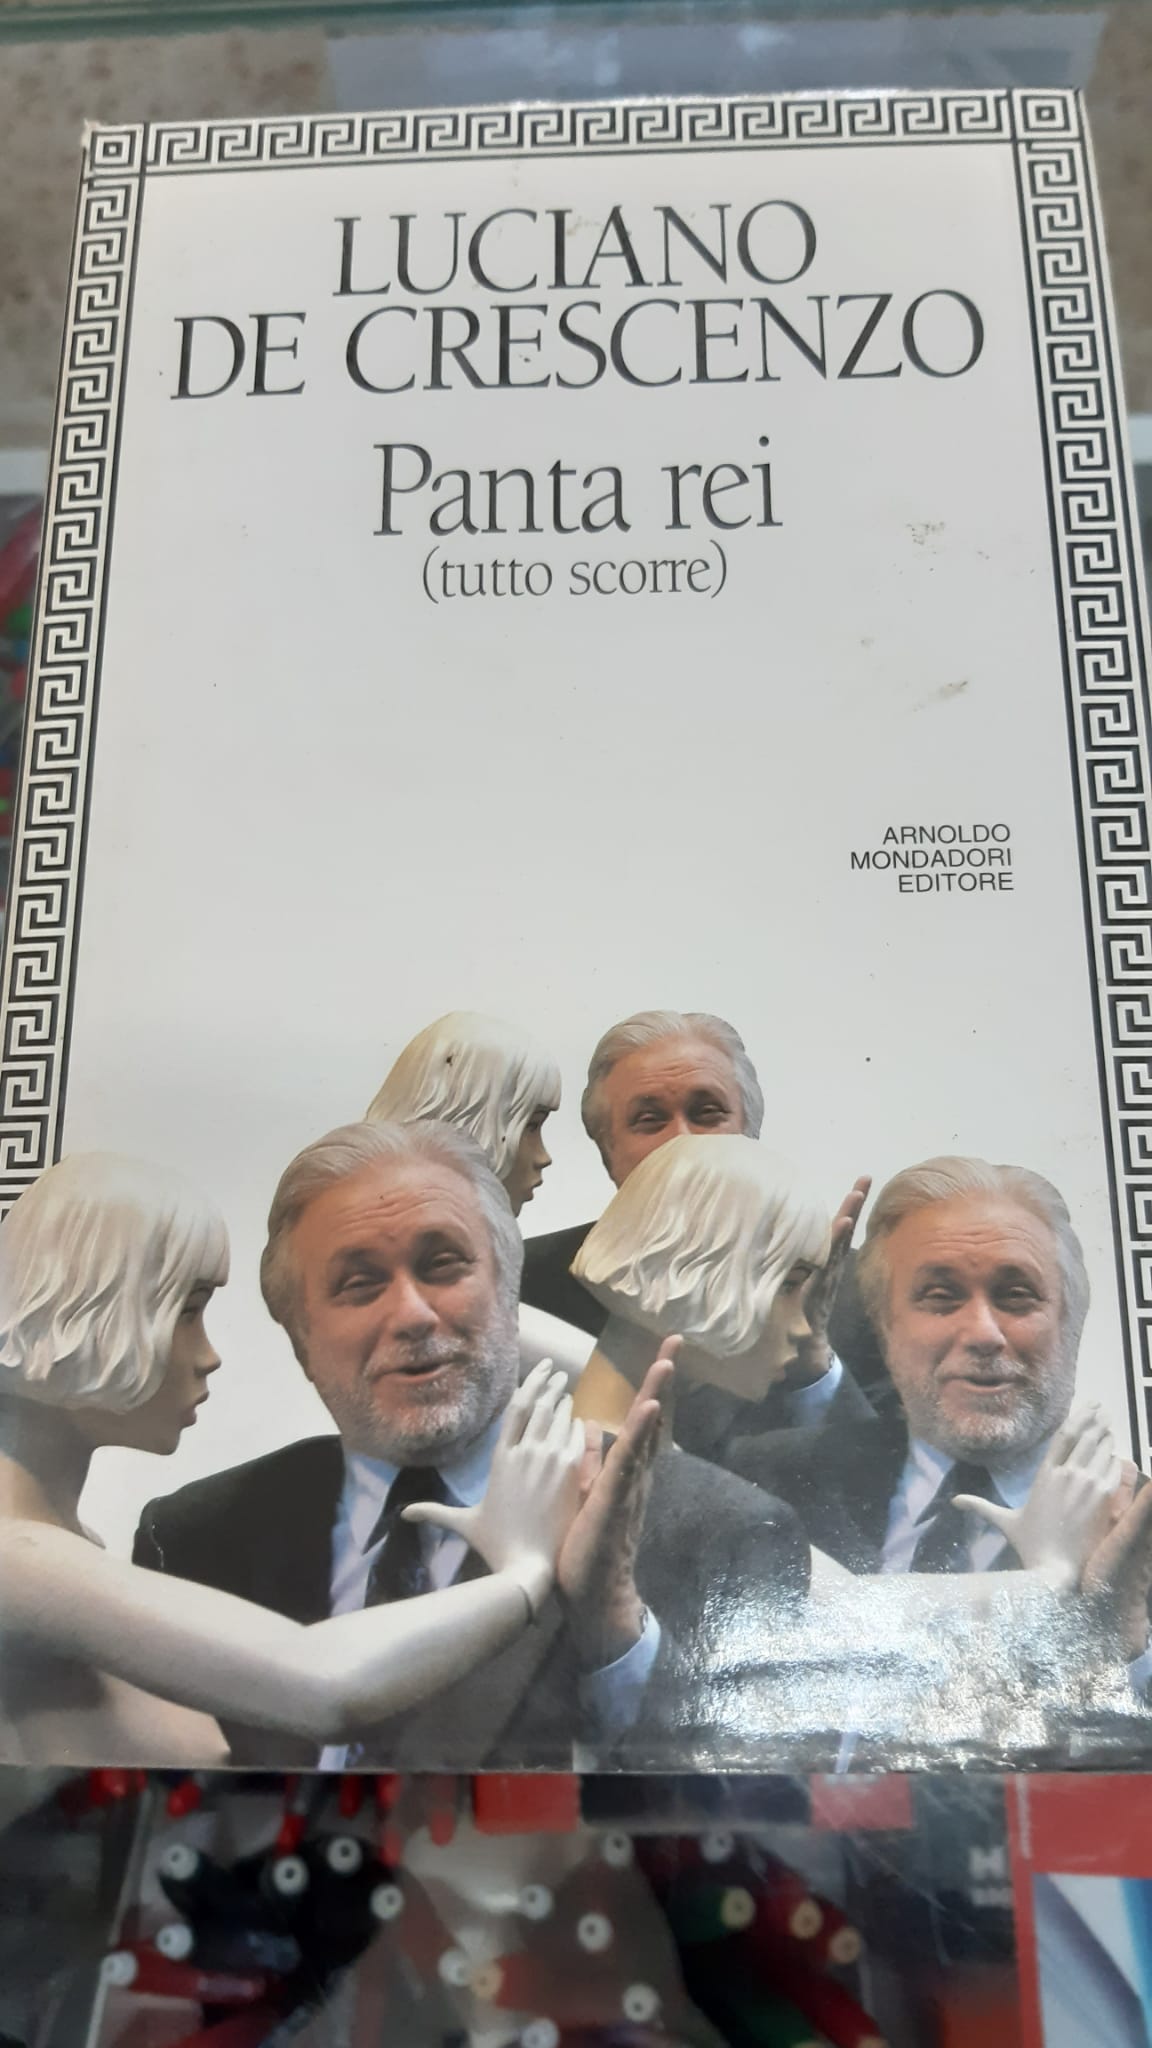 PANTA REI (TUTTO SCORRE) - DE CRESCENZO LUCIANO